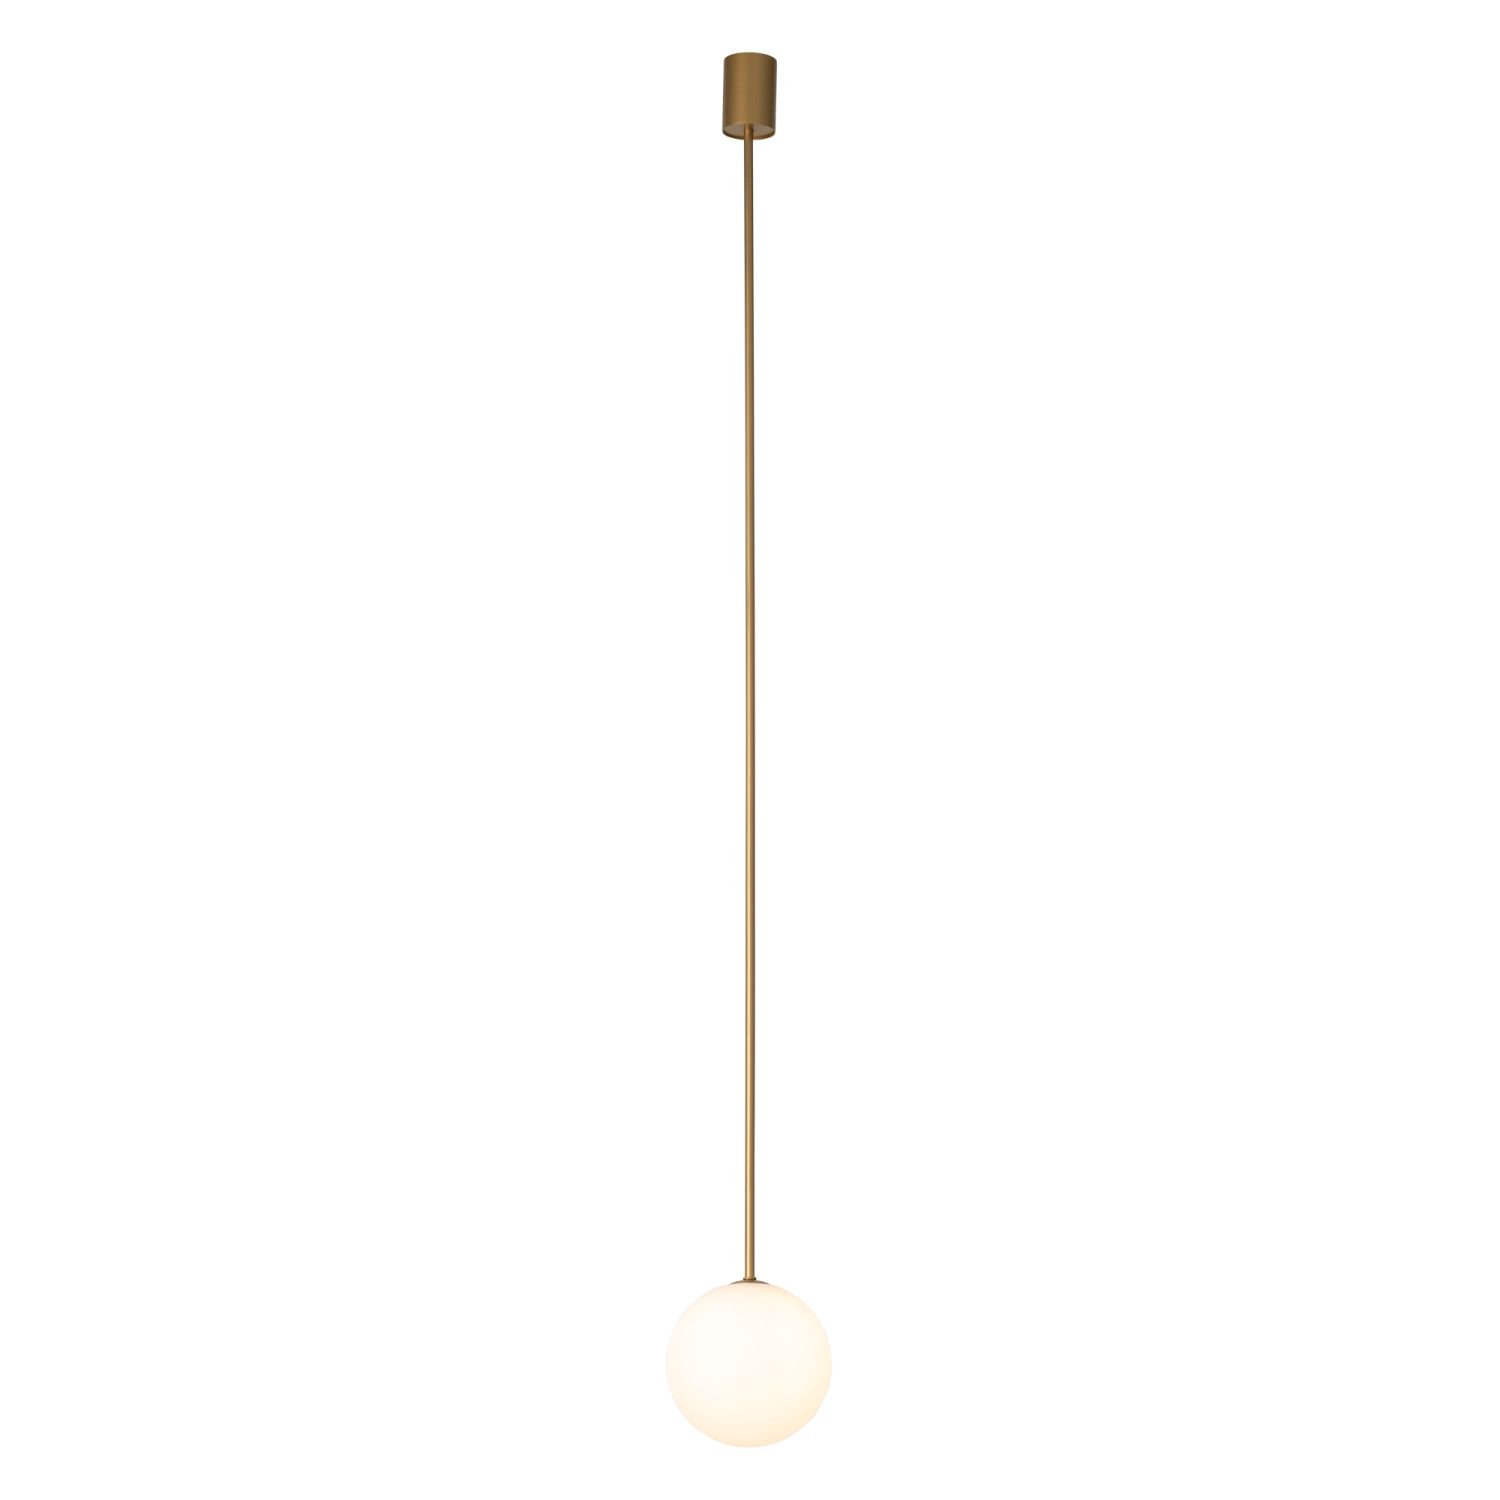 Kugellampe hängend G9 Ø 16 cm in Gold matt Weiß Glas Metall